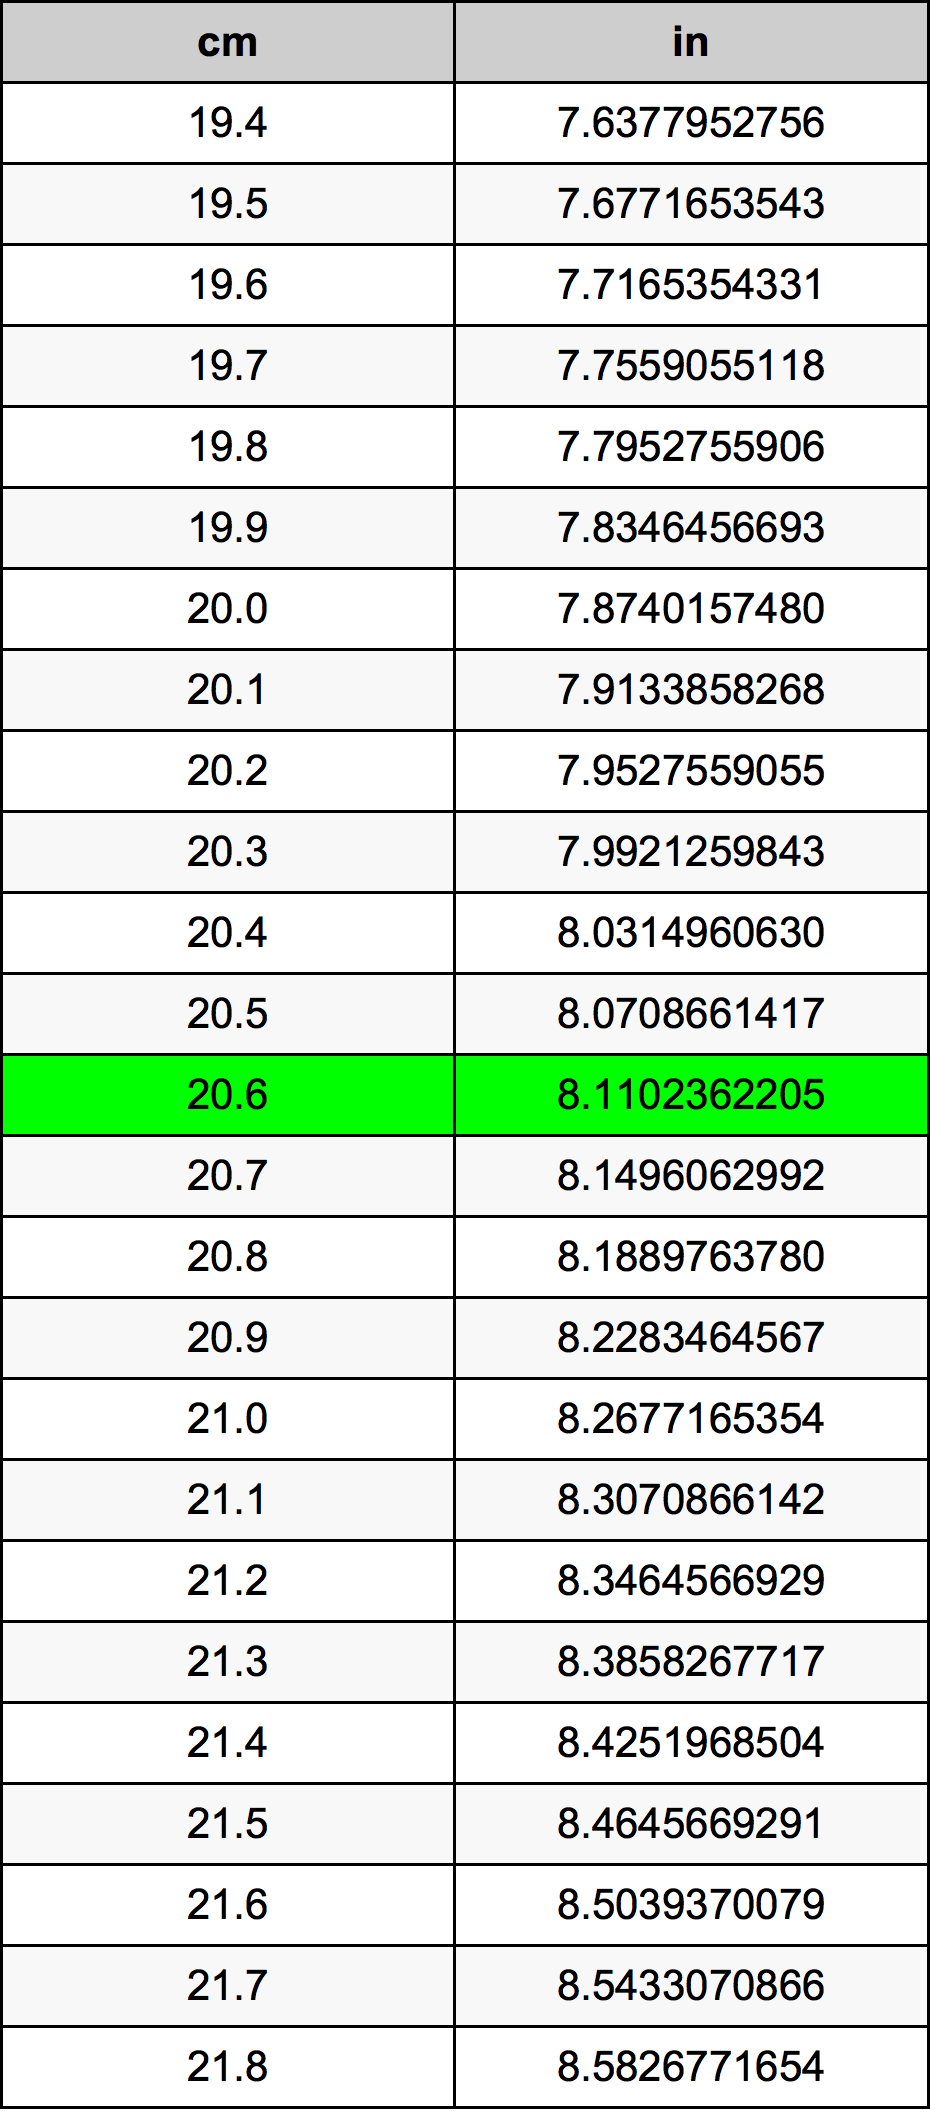 20.6 Centiméter átszámítási táblázat